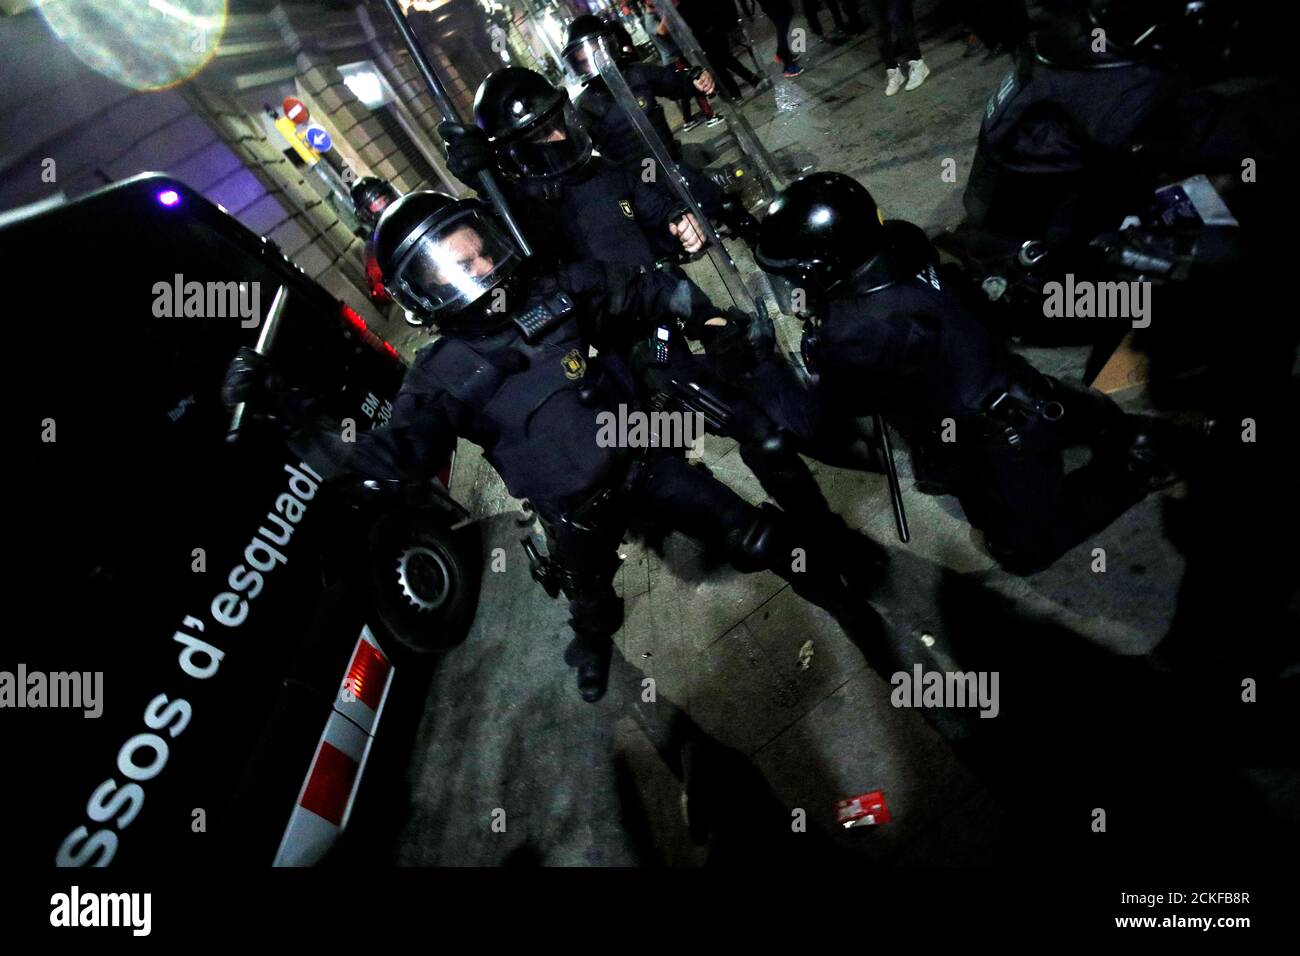 Die Bereitschaftspolizei wird während eines Protestes gegen Polizeiaktionen in Barcelona, Spanien, am 26. Oktober 2019 mit katalanischen Demonstranten für die Unabhängigkeit zusammenstoßen. REUTERS/Albert Gea Stockfoto